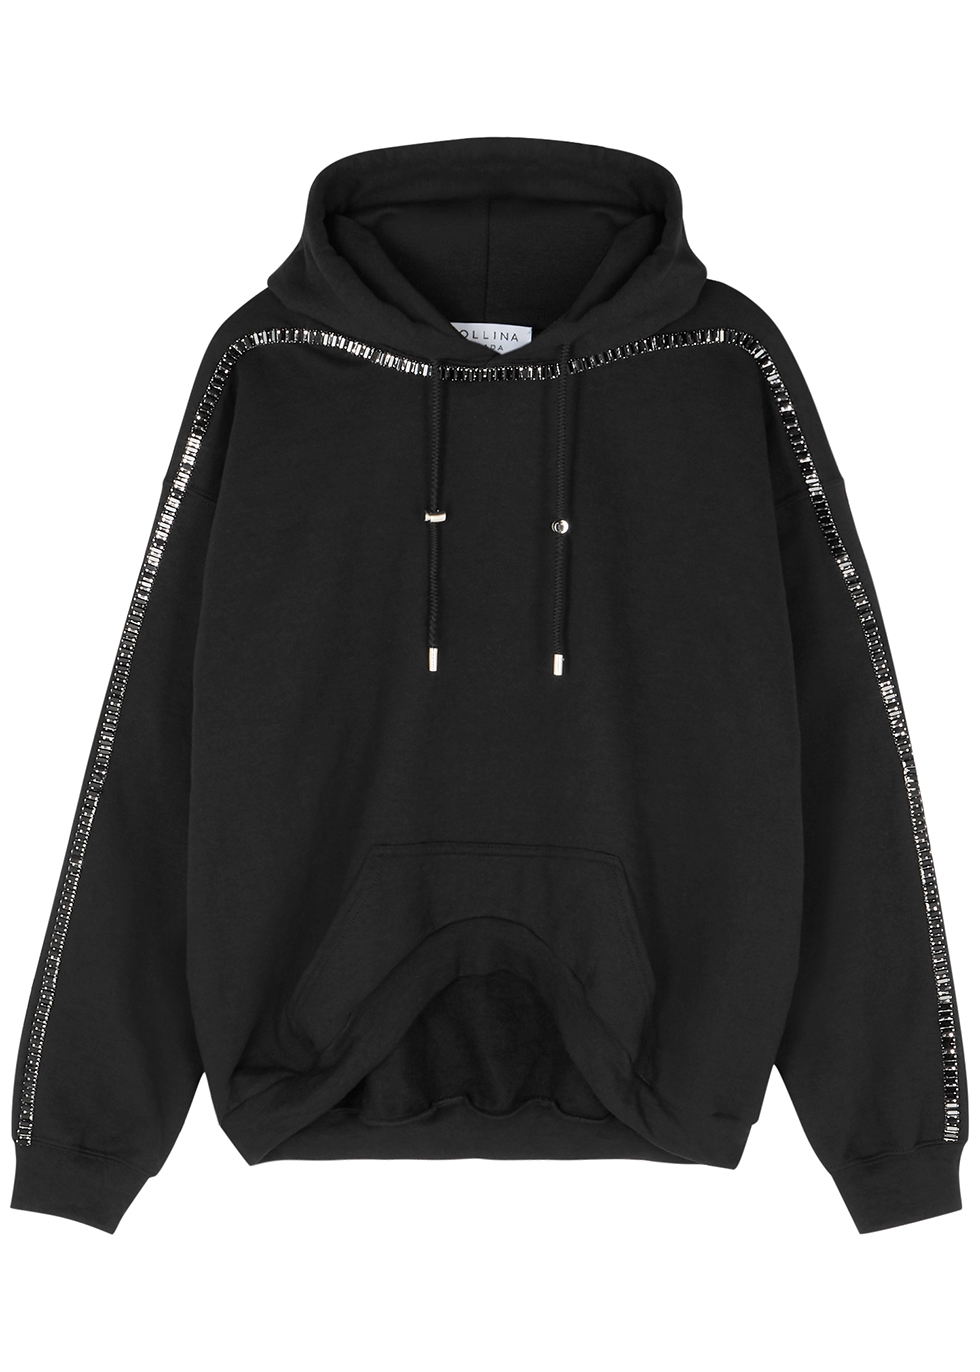 black jersey hoodie